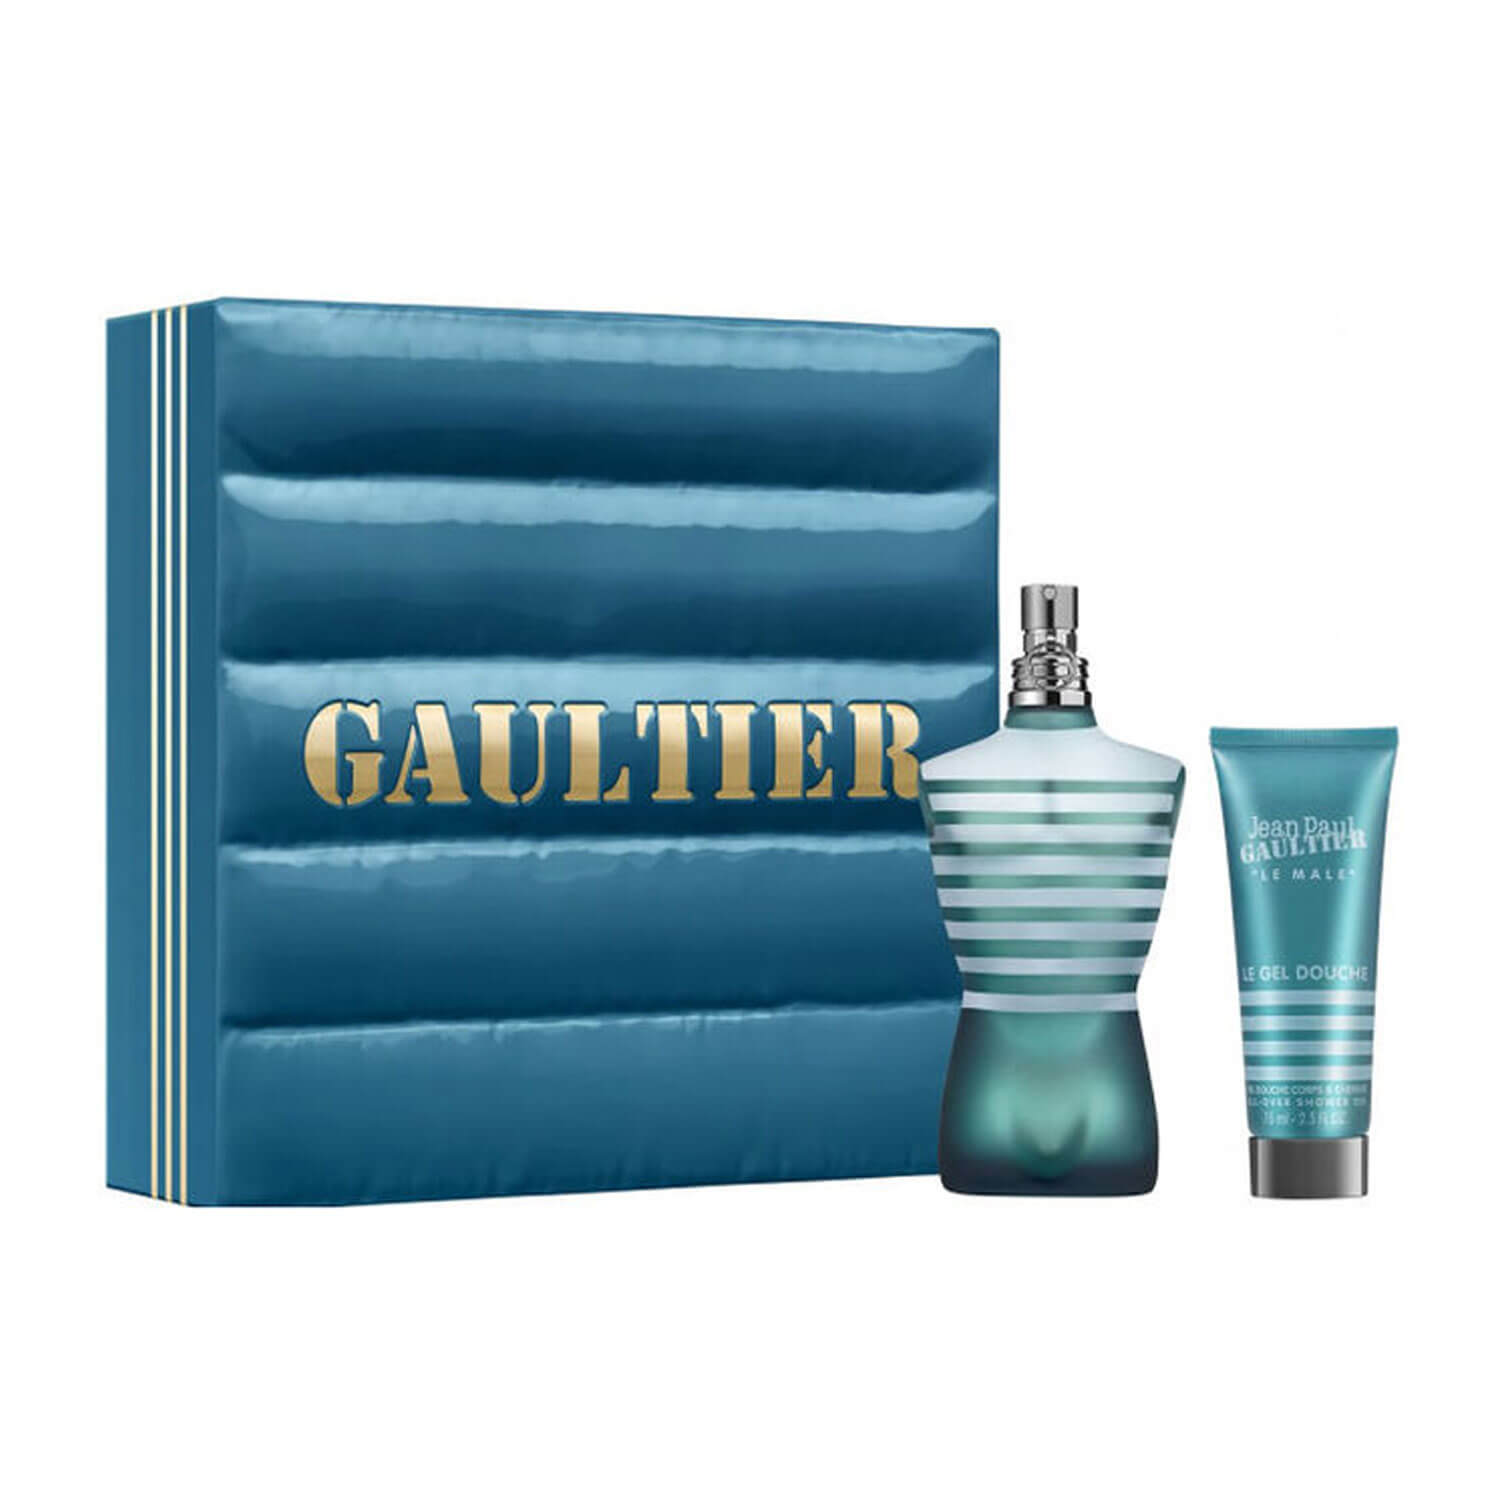 Jean Paul Gaultier Le Male Eau De Toilette 125ml 2 piece Gift Set 1 Shaws Department Stores